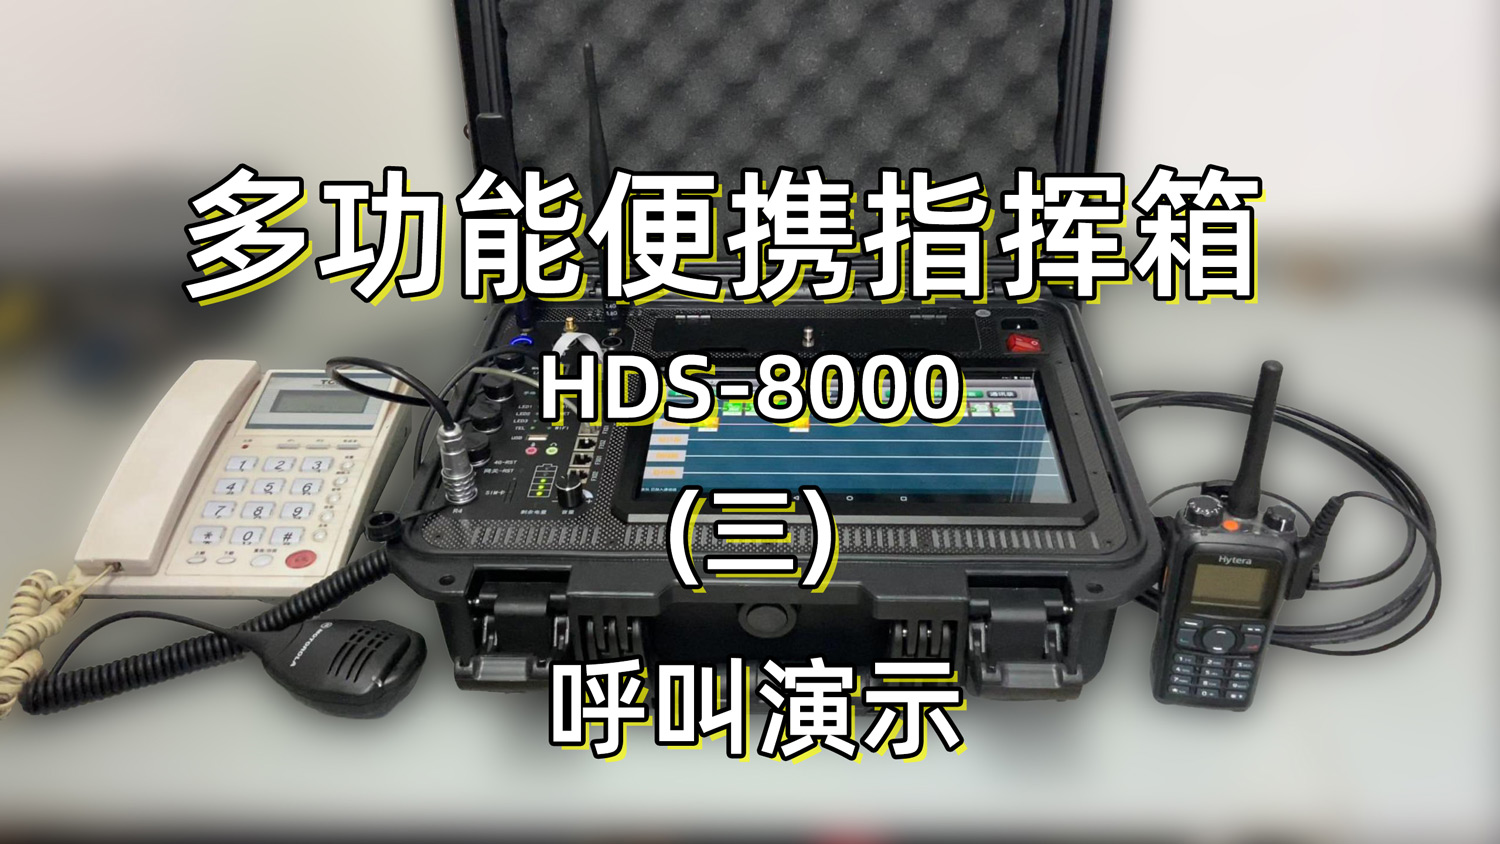 语音综合调度台|便携通讯指挥箱 HDS8000 呼叫演示